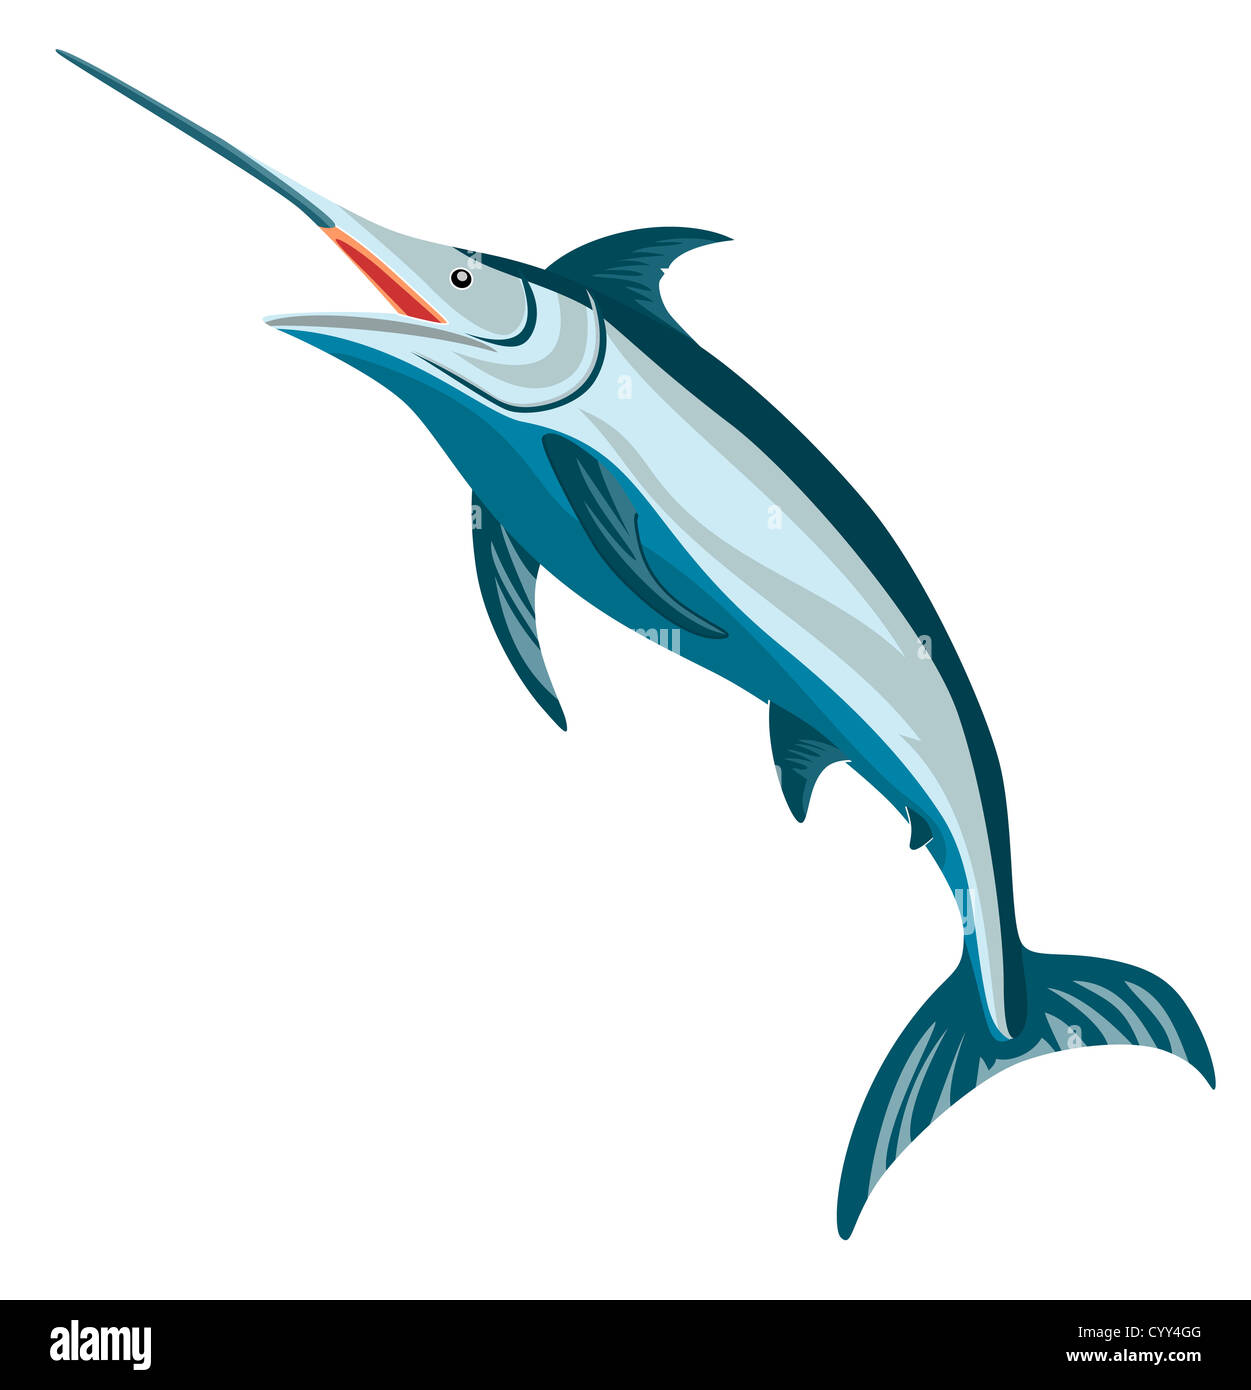 Illustrazione di un marlin azzurro Pesce jumping fatto in stile retrò. Foto Stock